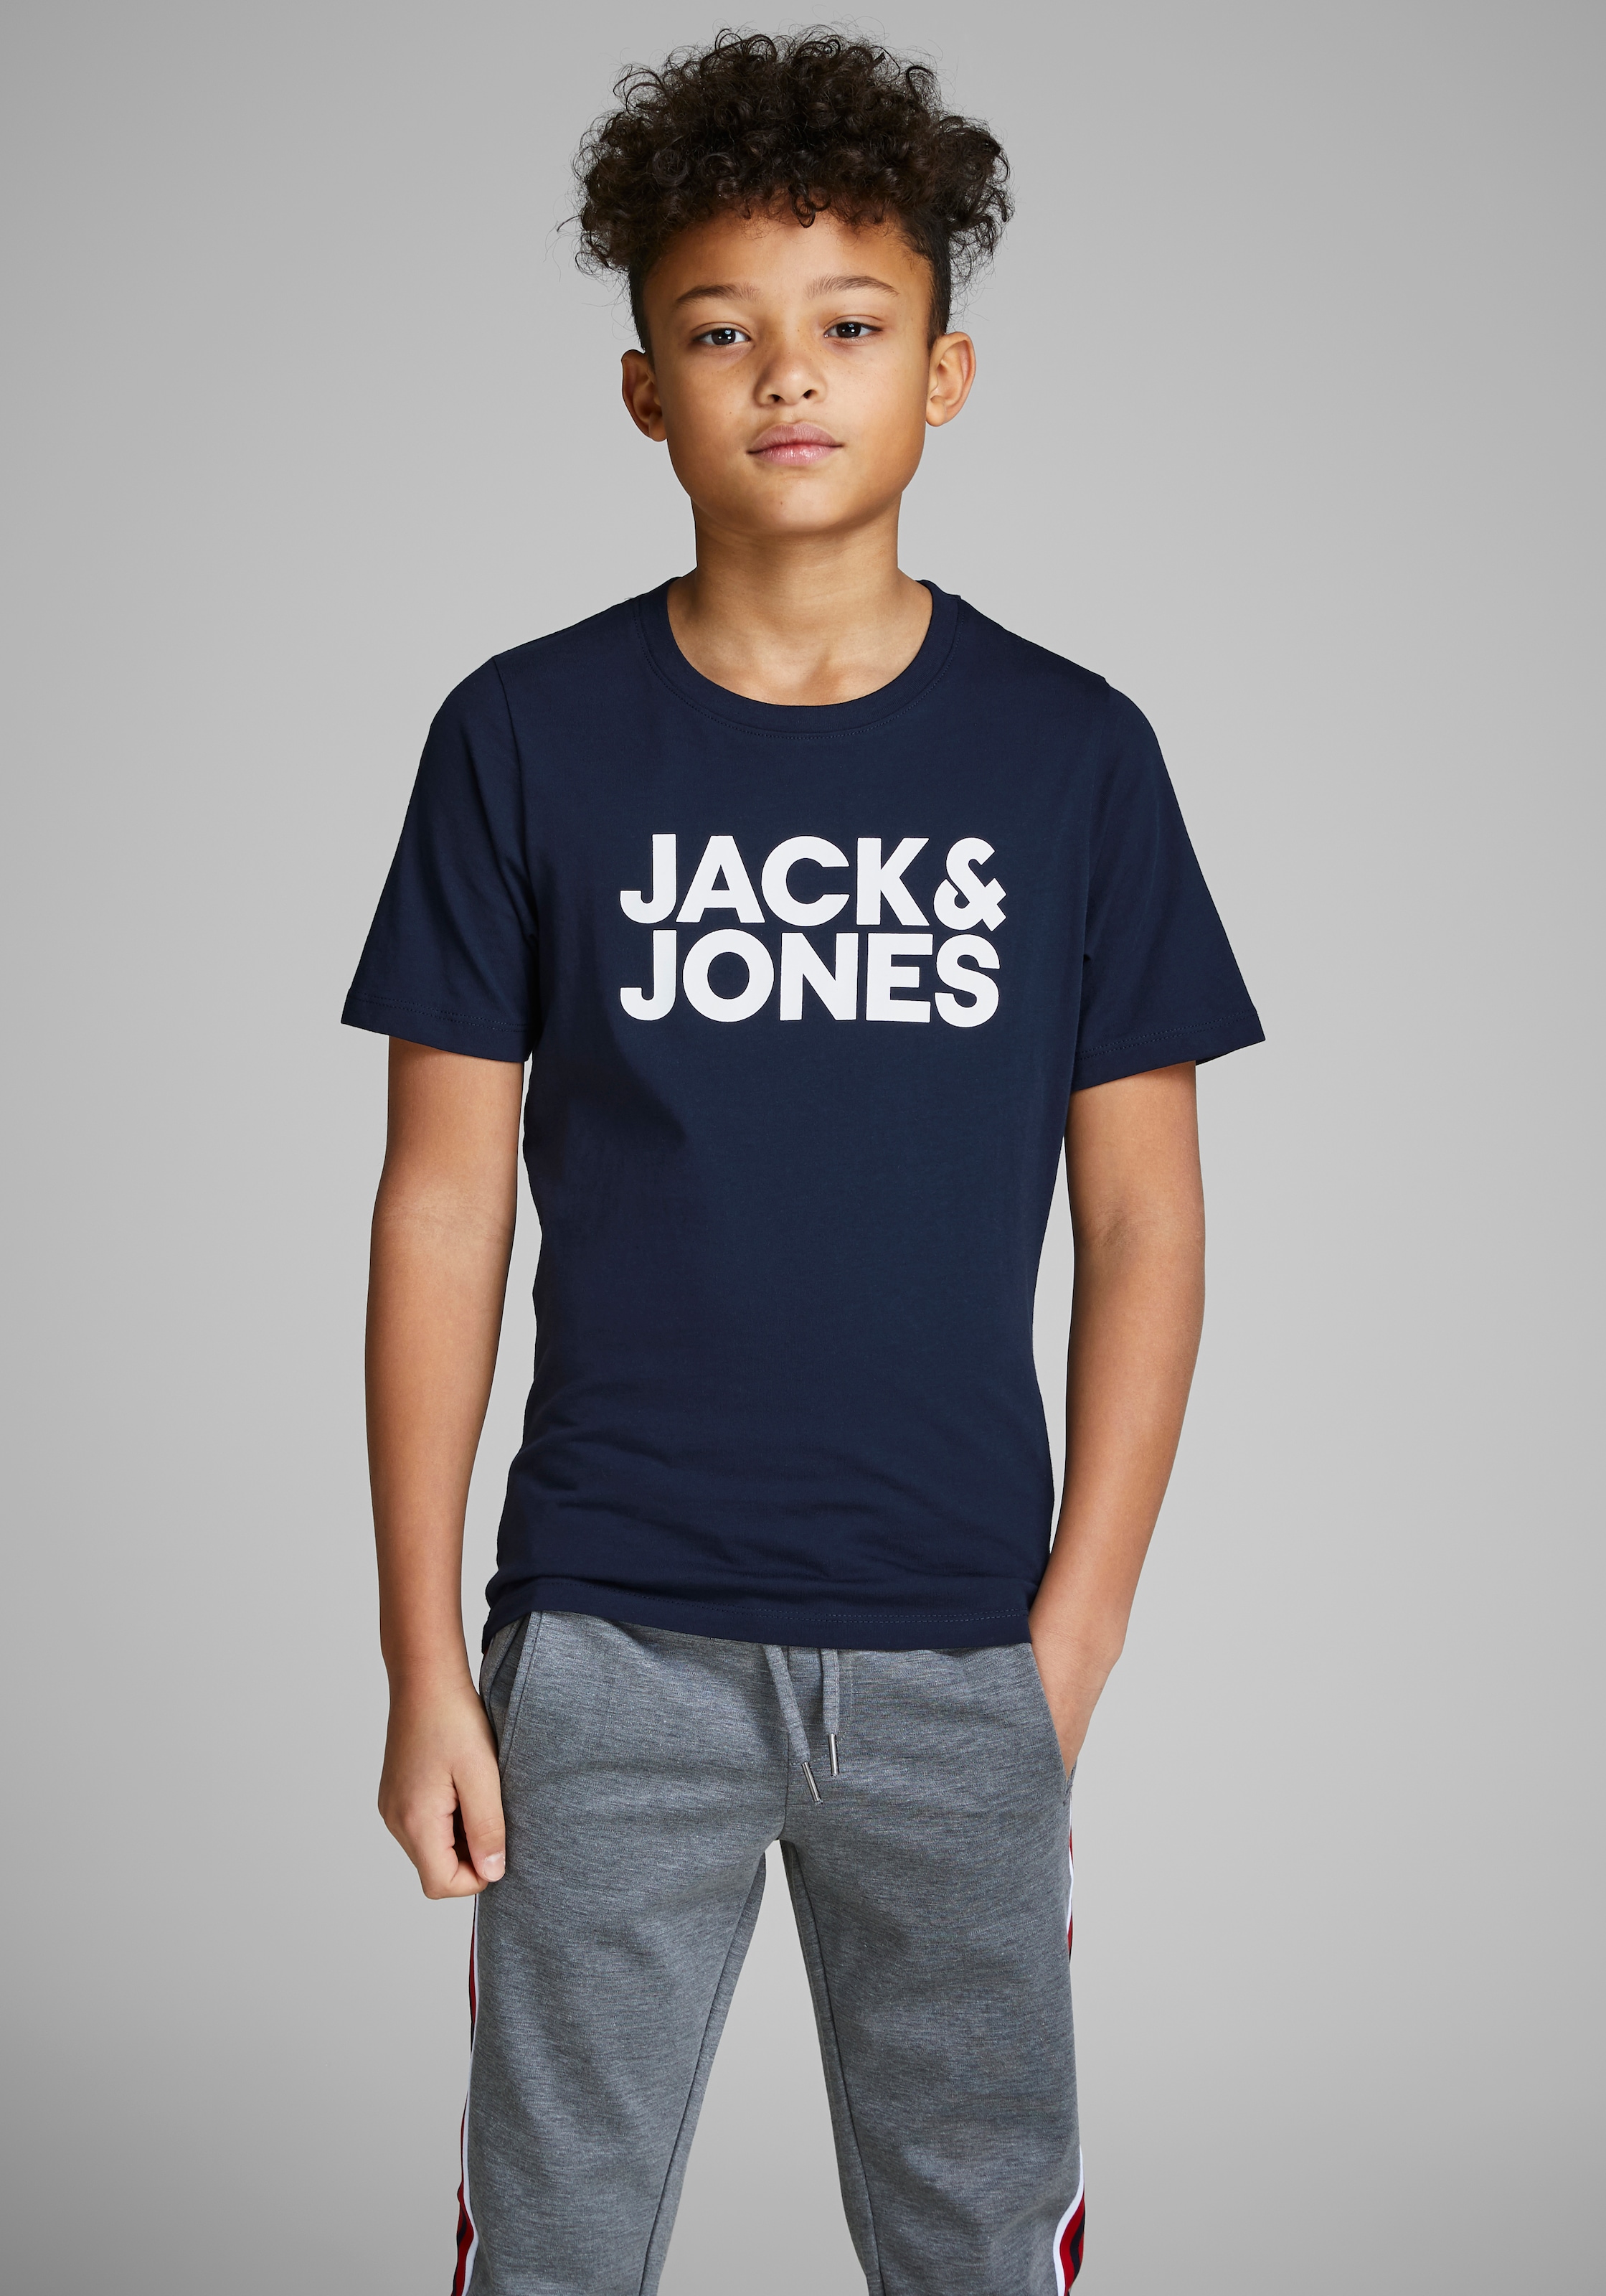 kaufen Jack OTTO Jones & Junior bei T-Shirt